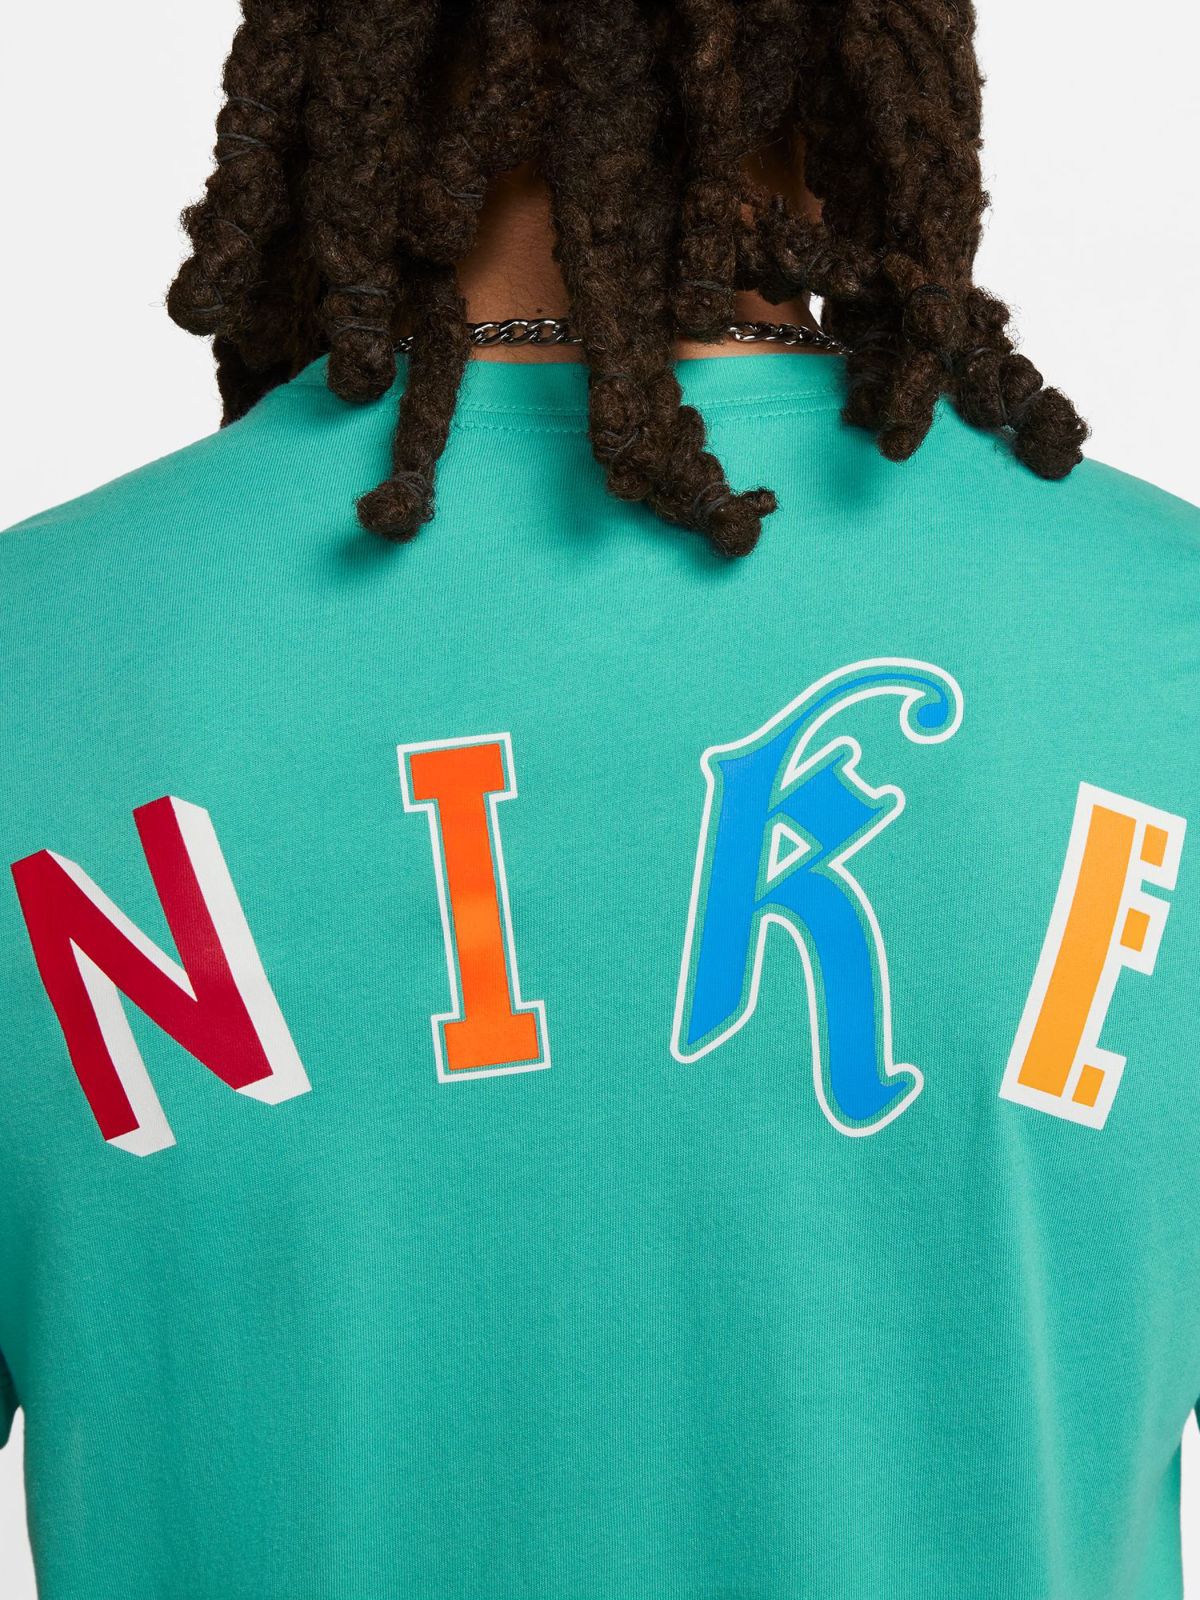  Nike Dri-FIT טי שירט עם לוגו של NIKE